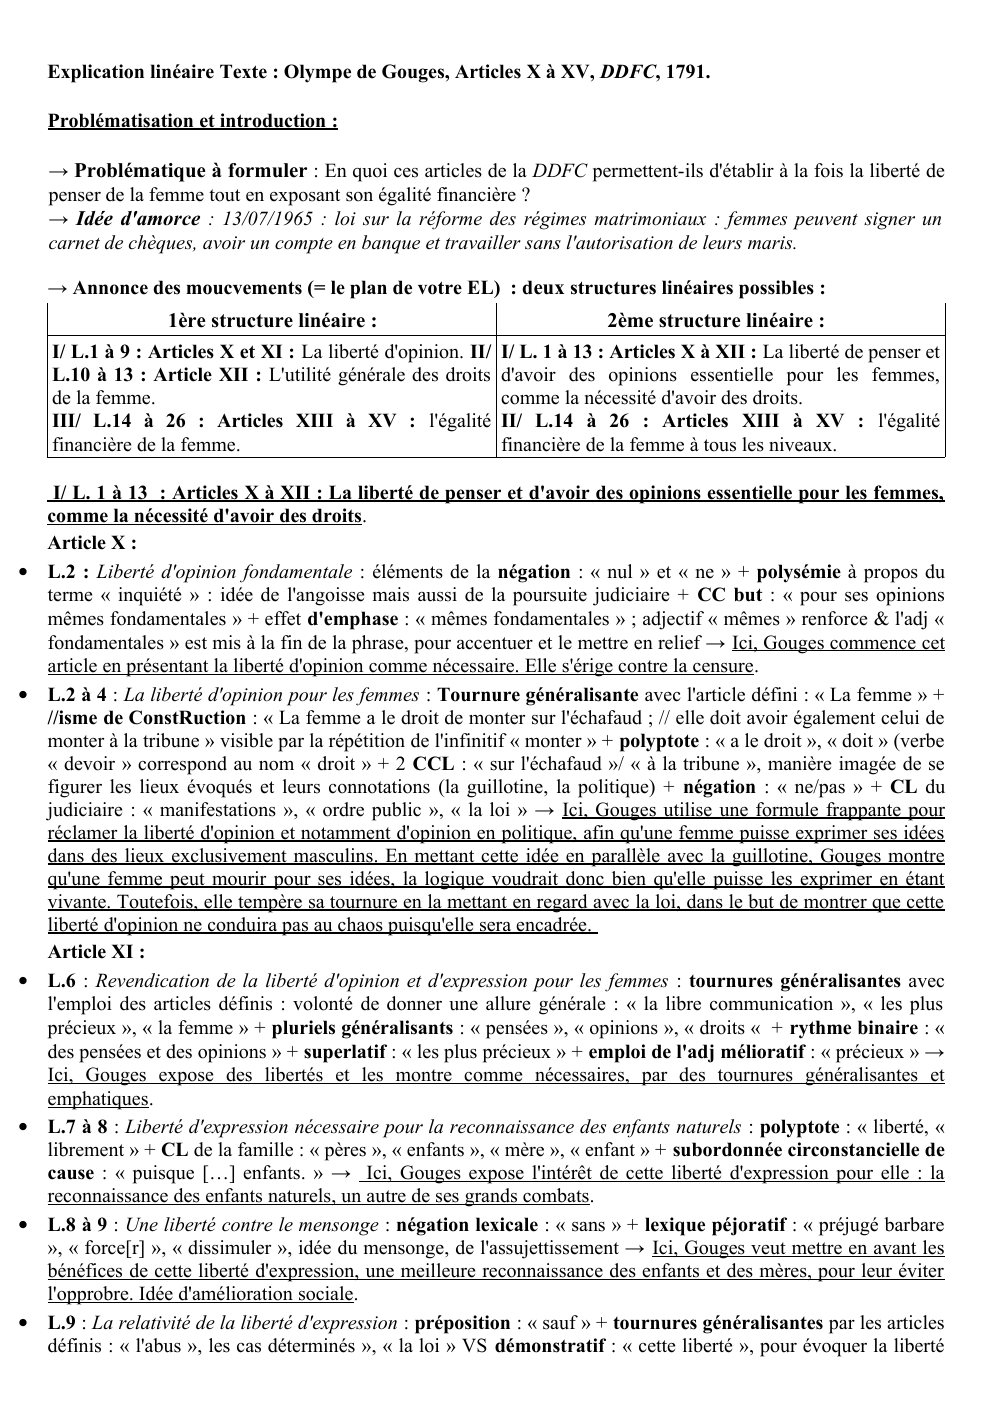 Prévisualisation du document Explication linéaire des articles X à XV de la DDFC d'Olympe de Gouges6